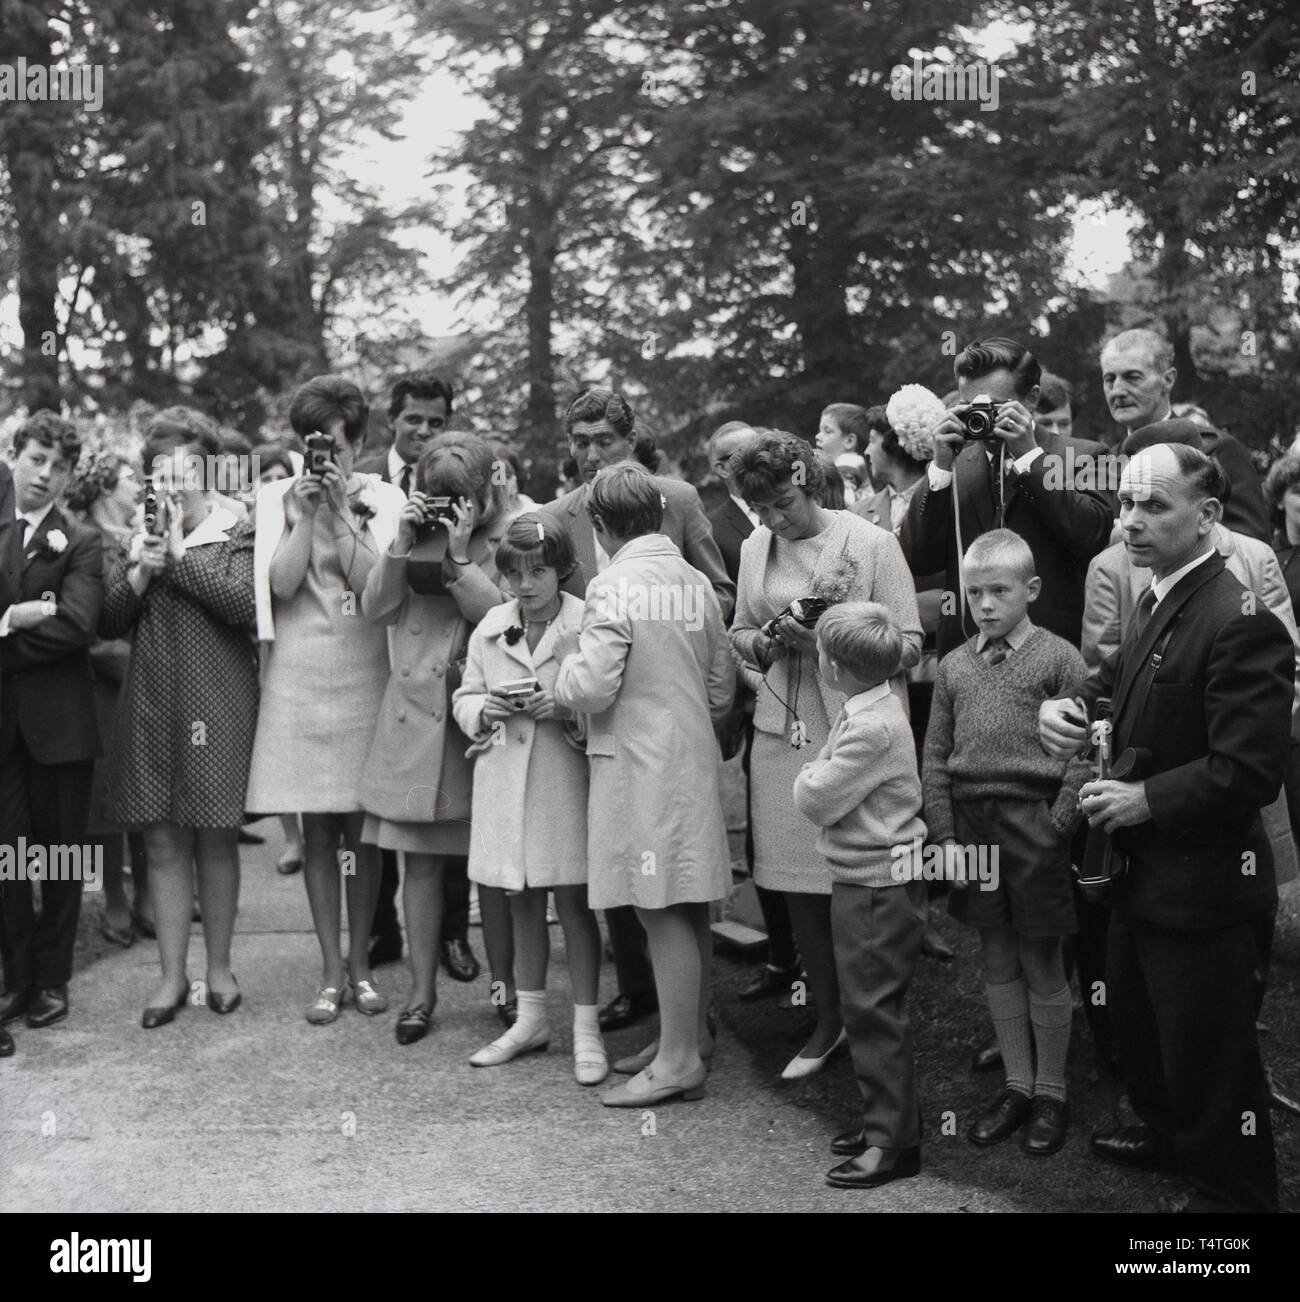 1960, historische, elegant gekleidete Gäste bei einer Hochzeit außerhalb Fotografieren mit Film und Video Kameras der Ära, England, UK. Stockfoto